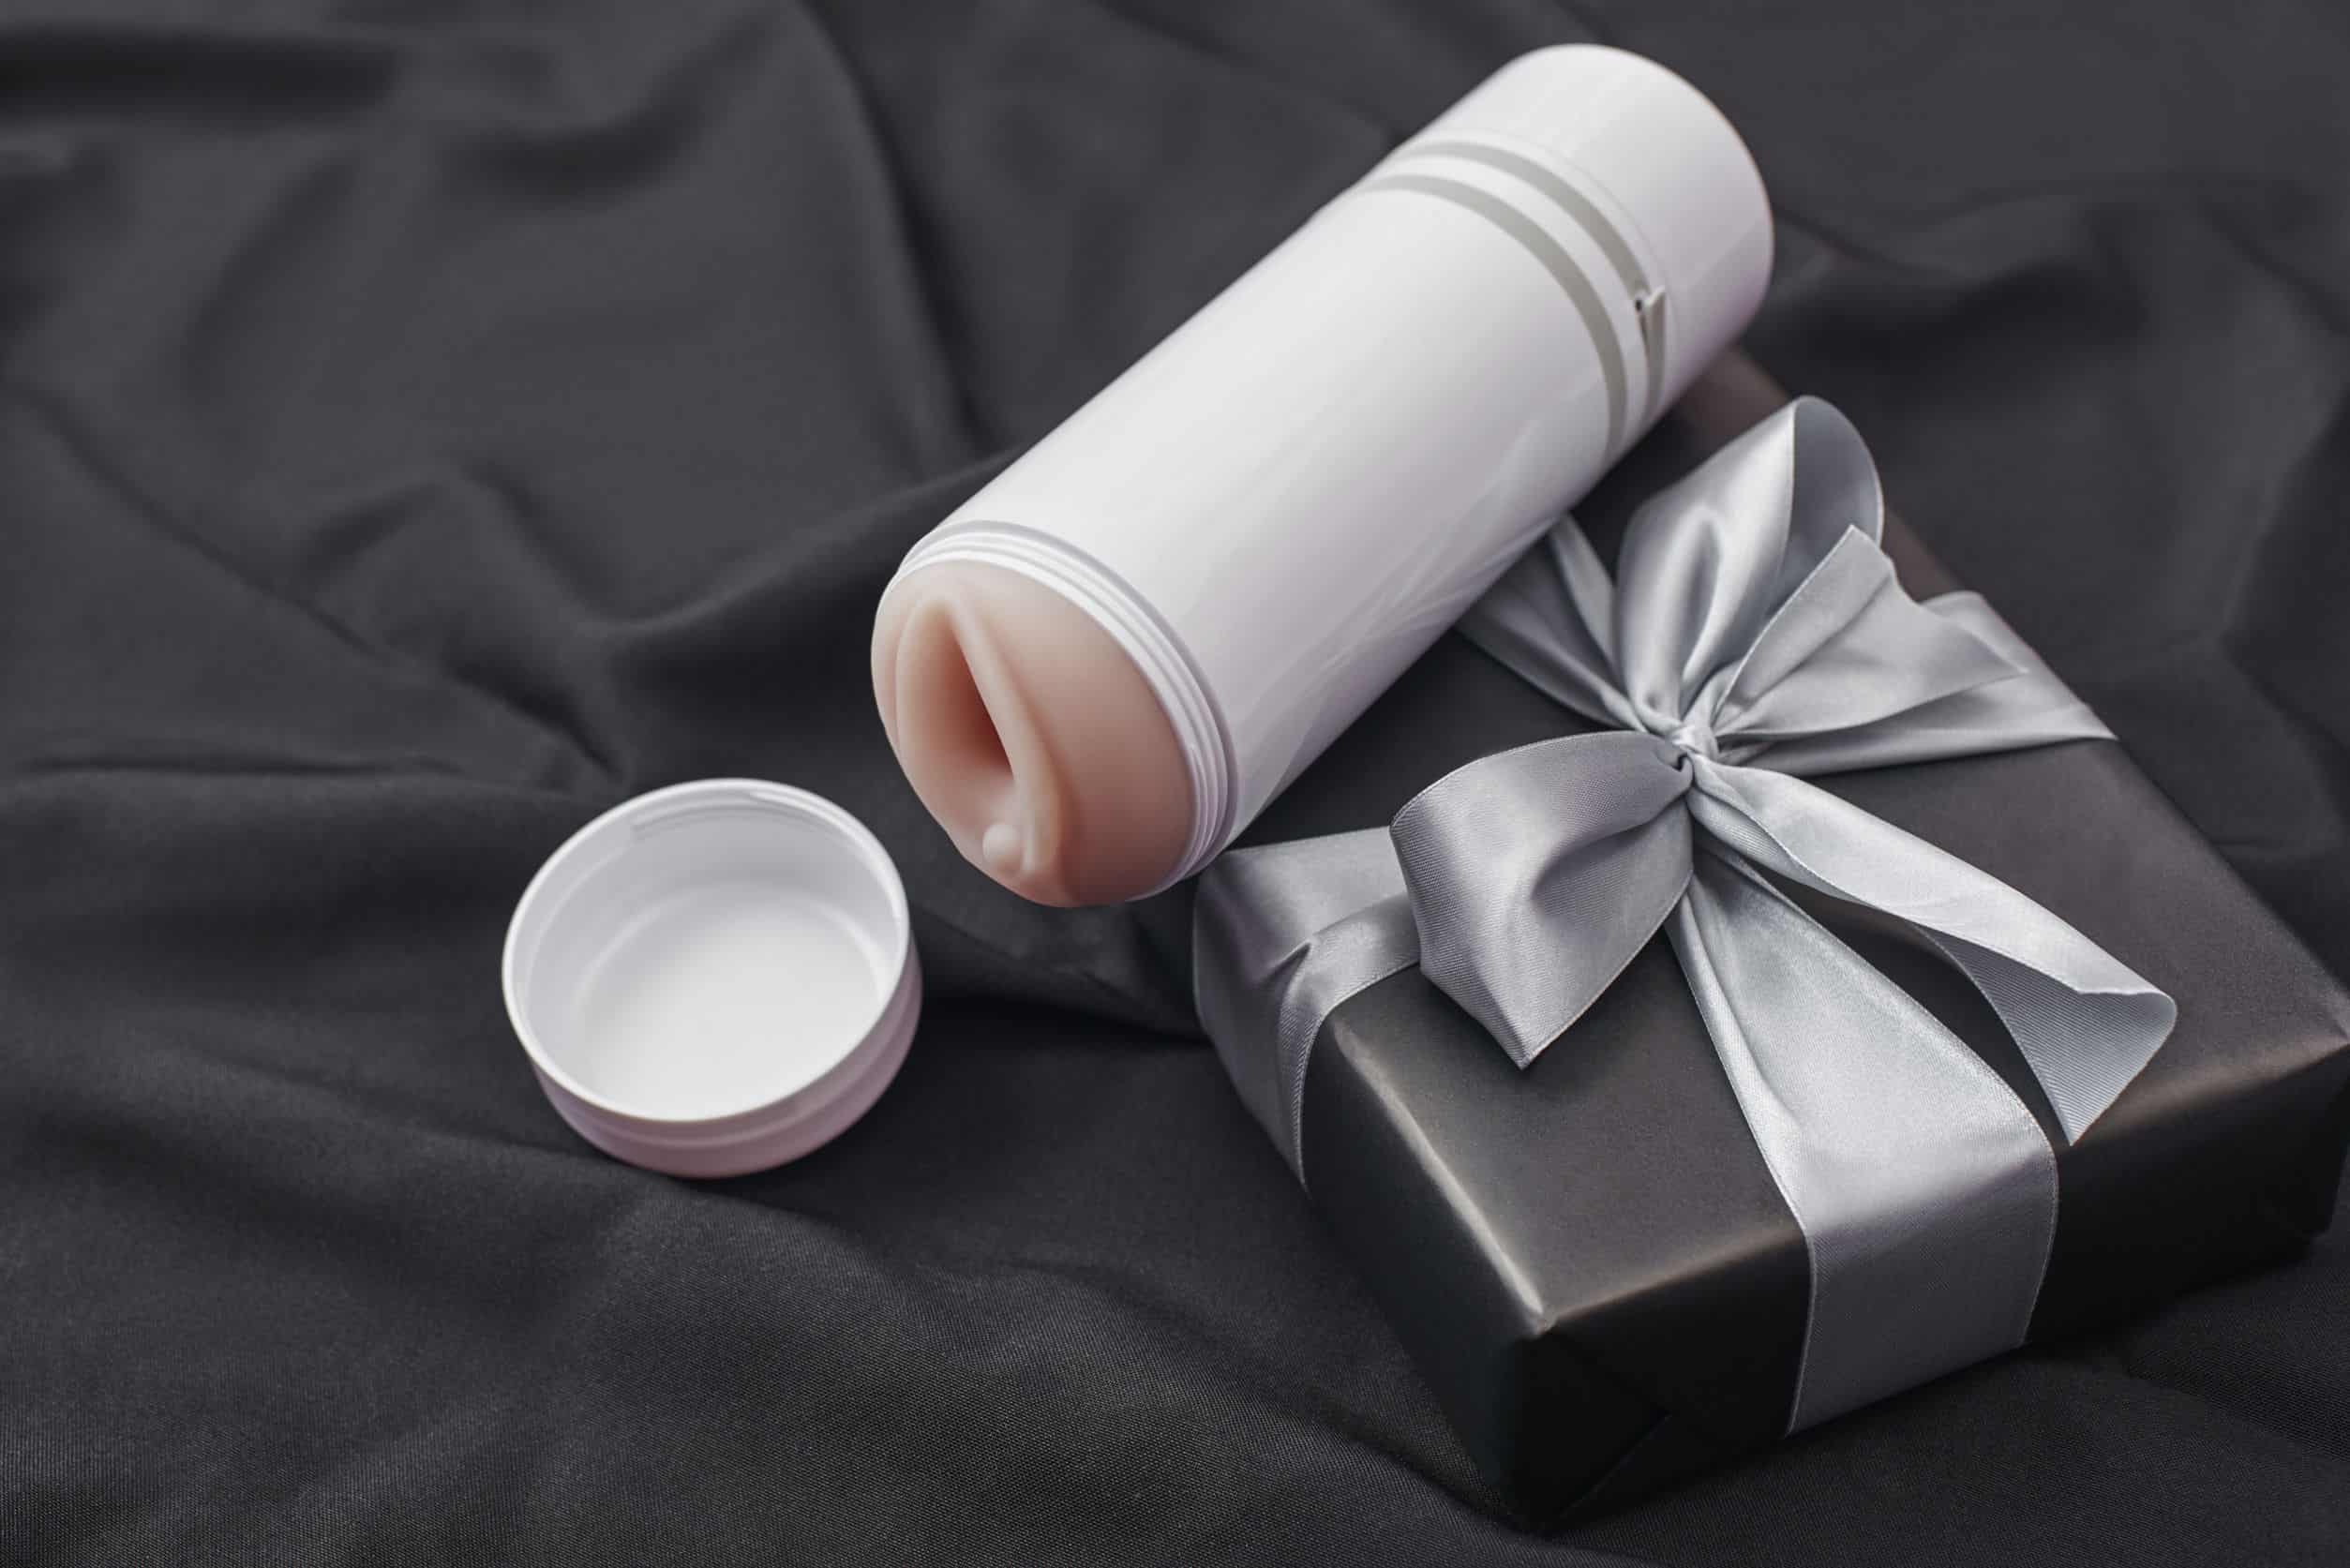 Siete regalos eróticos para sorprender en San Valentín - Diario Libre